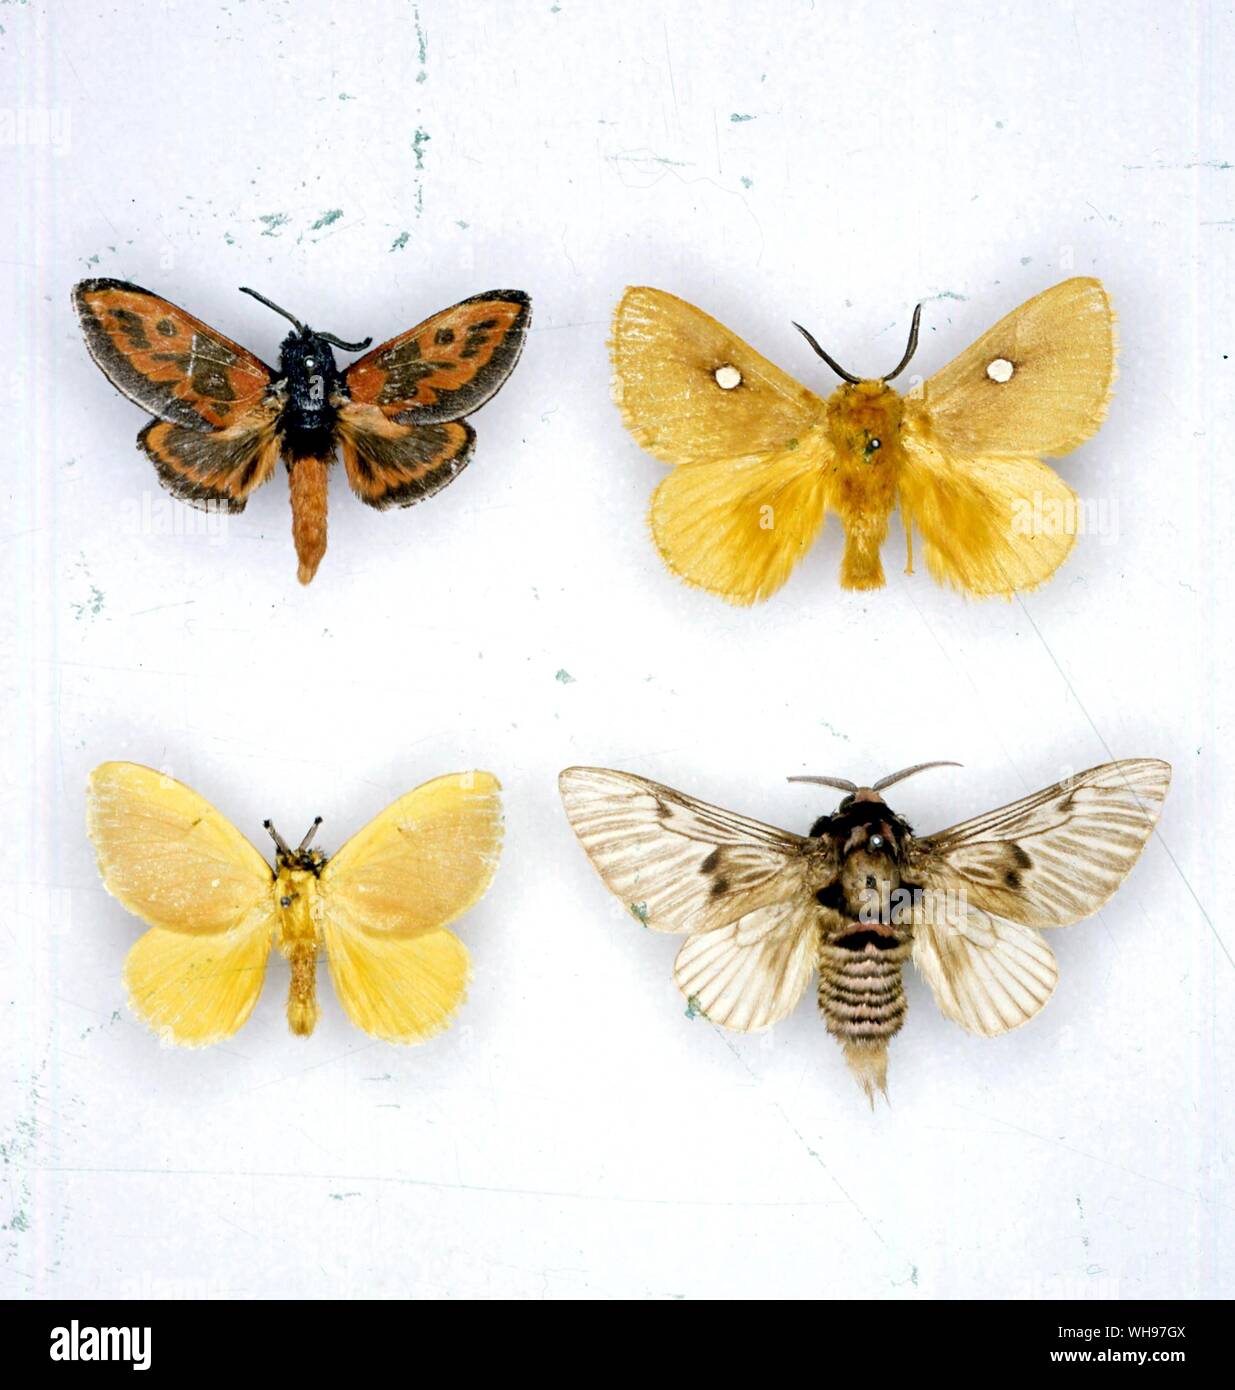 Papillons papillons/- de gauche à droite - Chrysopoloma Trosia bicolor, similis, Dalcera, abrasa Megalopyge lanata, Zygaena occitanica Banque D'Images